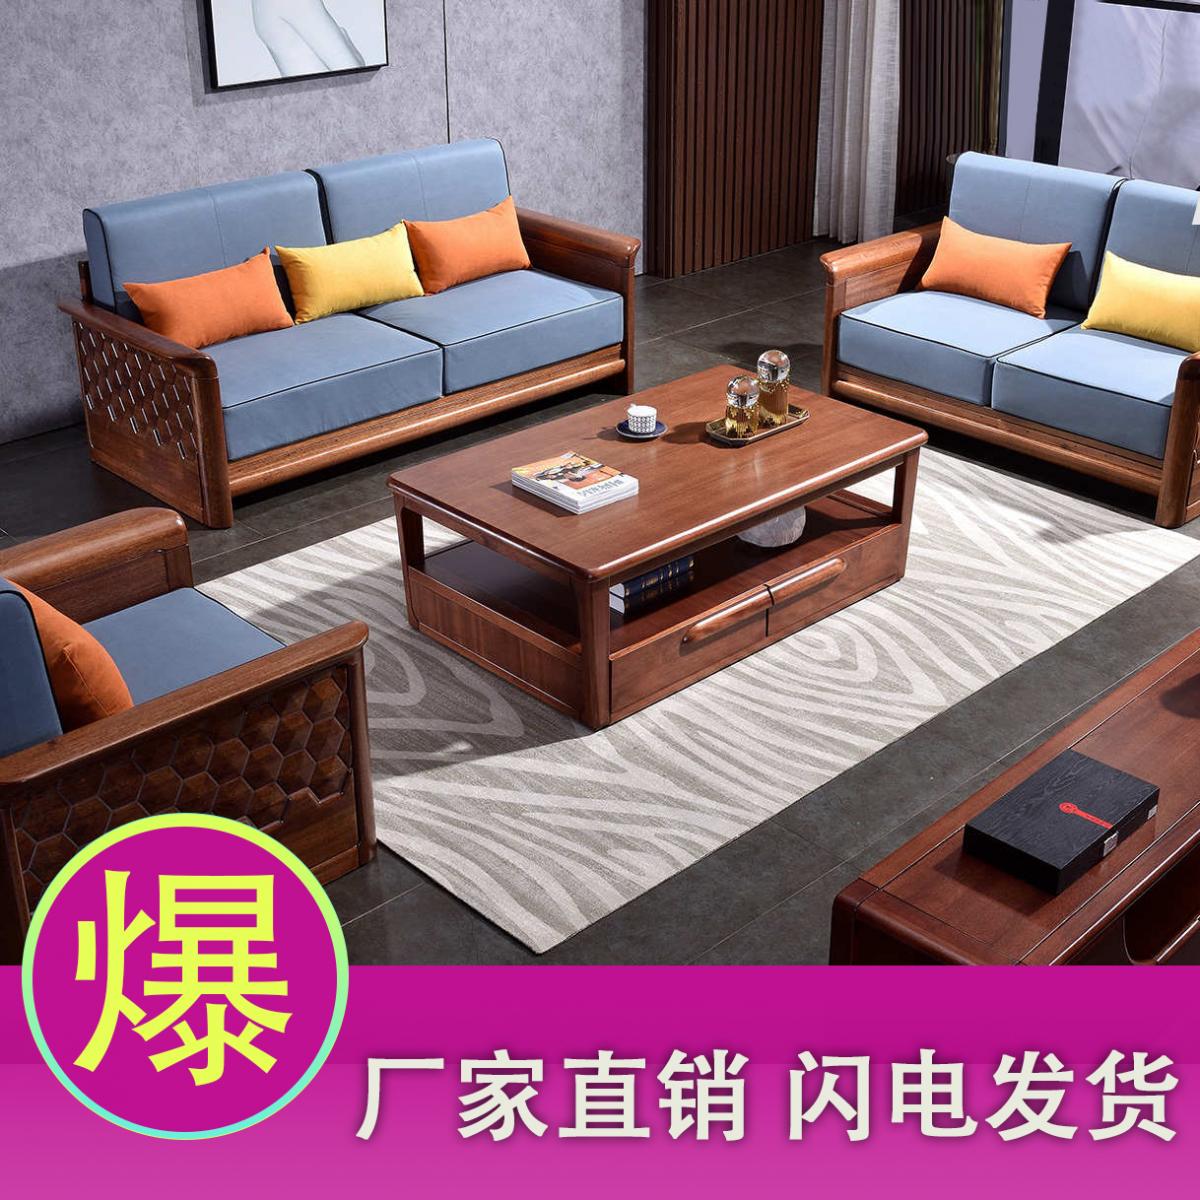 金丝柚木实木沙发组合现代简约1+2+3新中式木质转角布艺沙发客厅家具